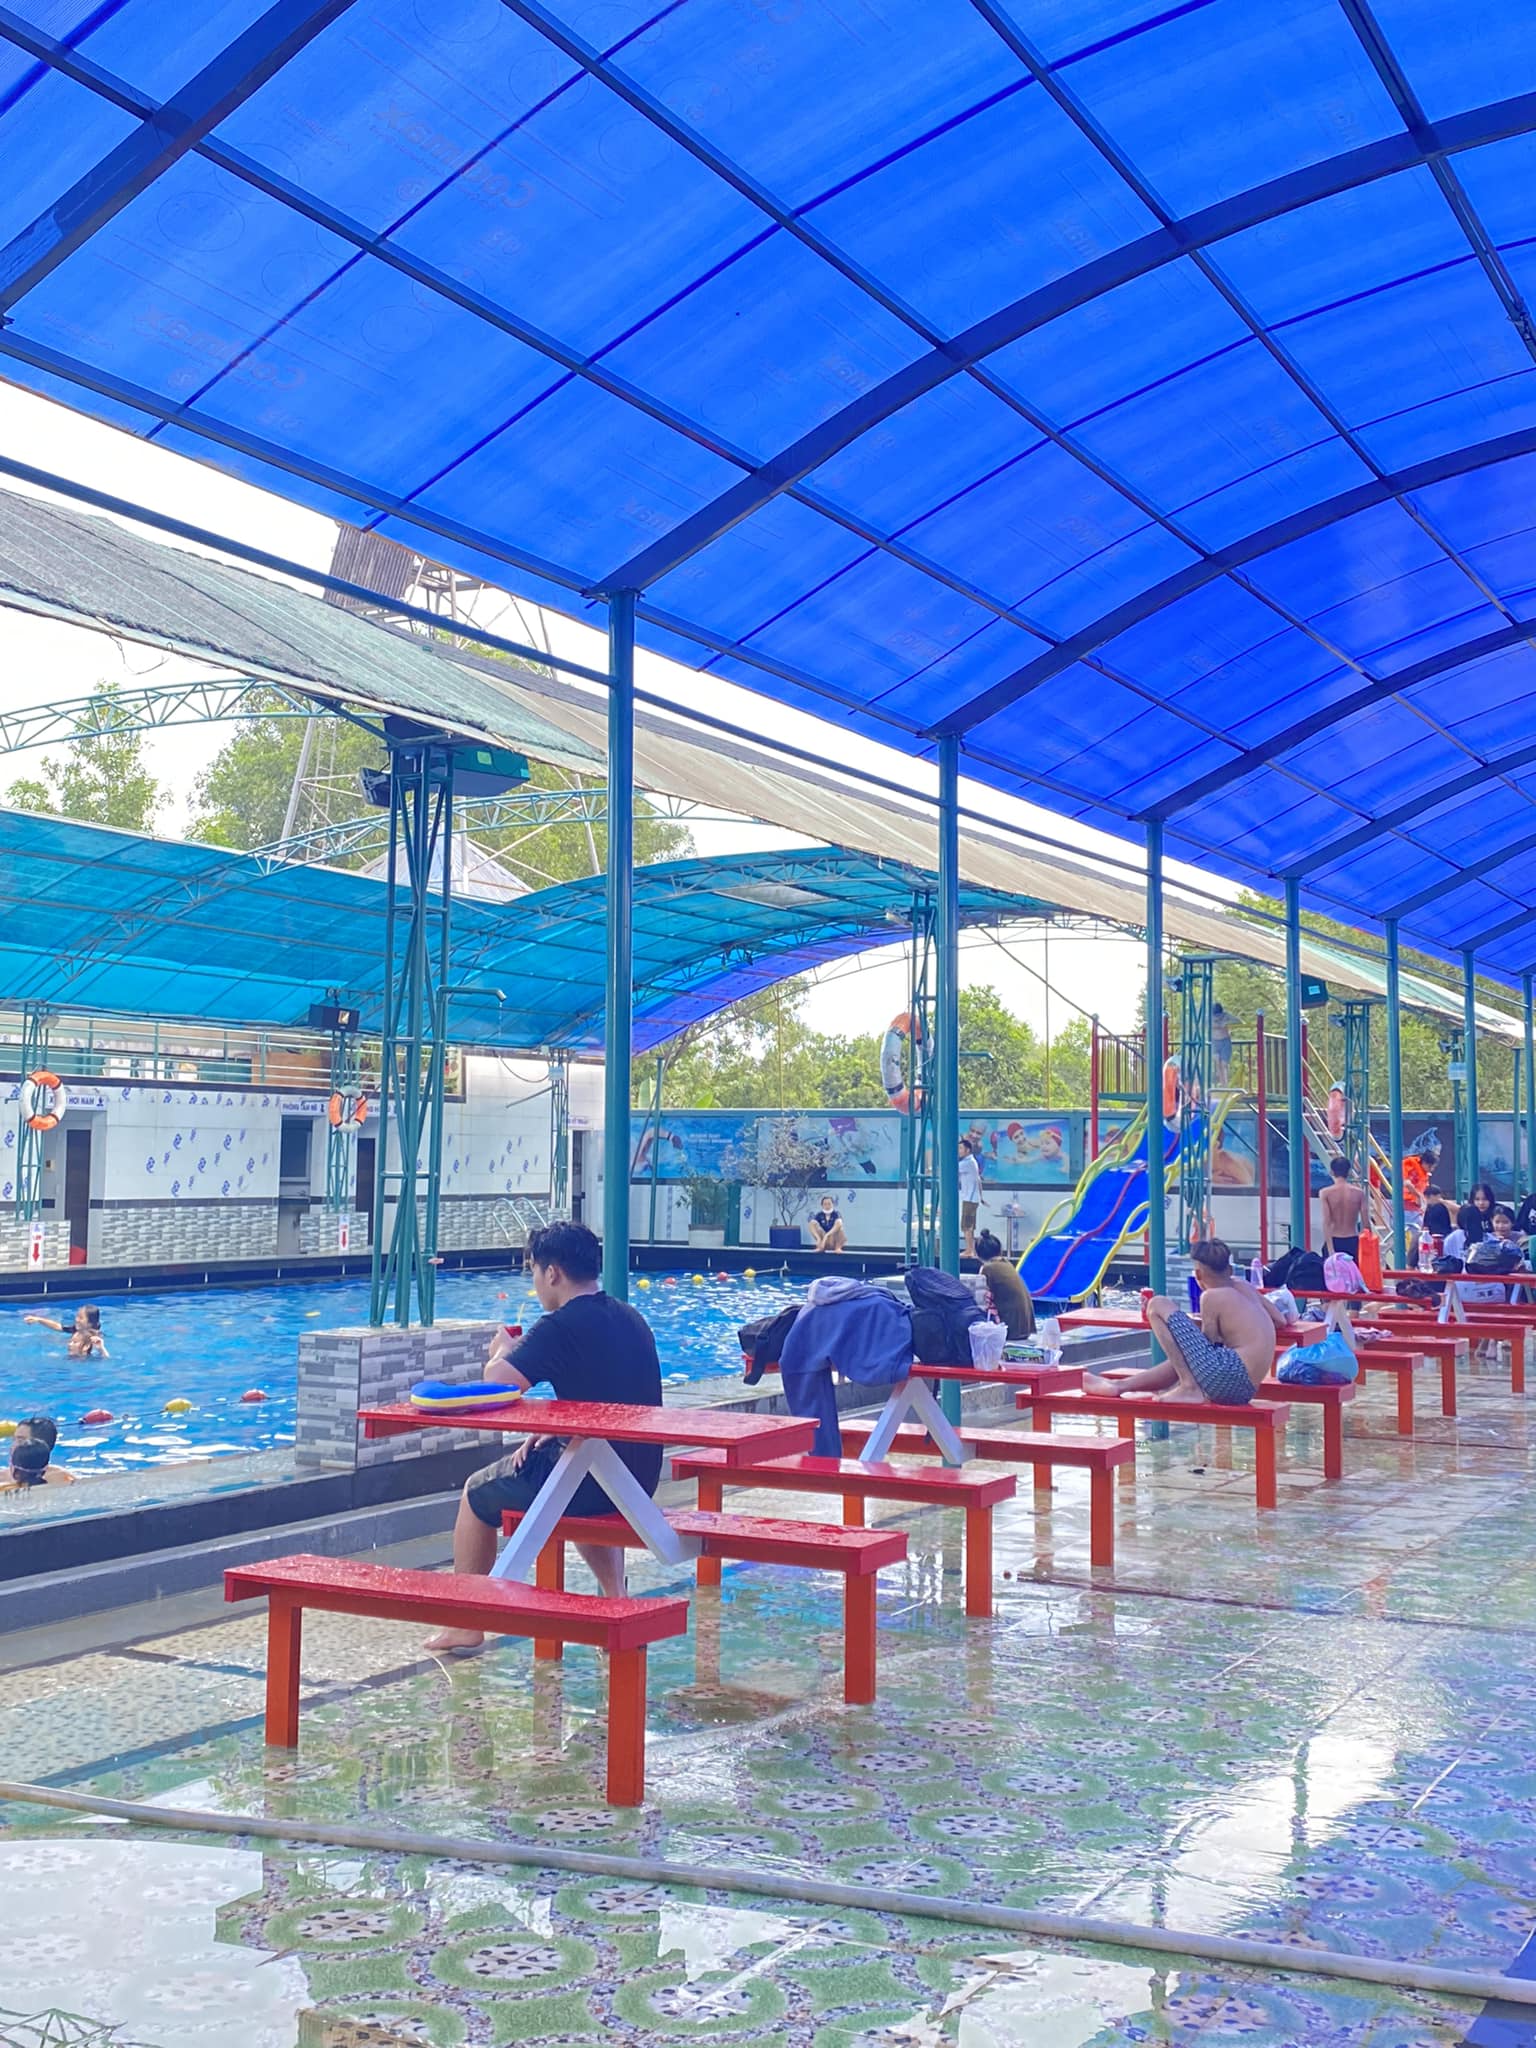 Thiết kế không gian bể bơi làm nổi bật sự thoáng đãng, tận dụng ánh sáng tự nhiên